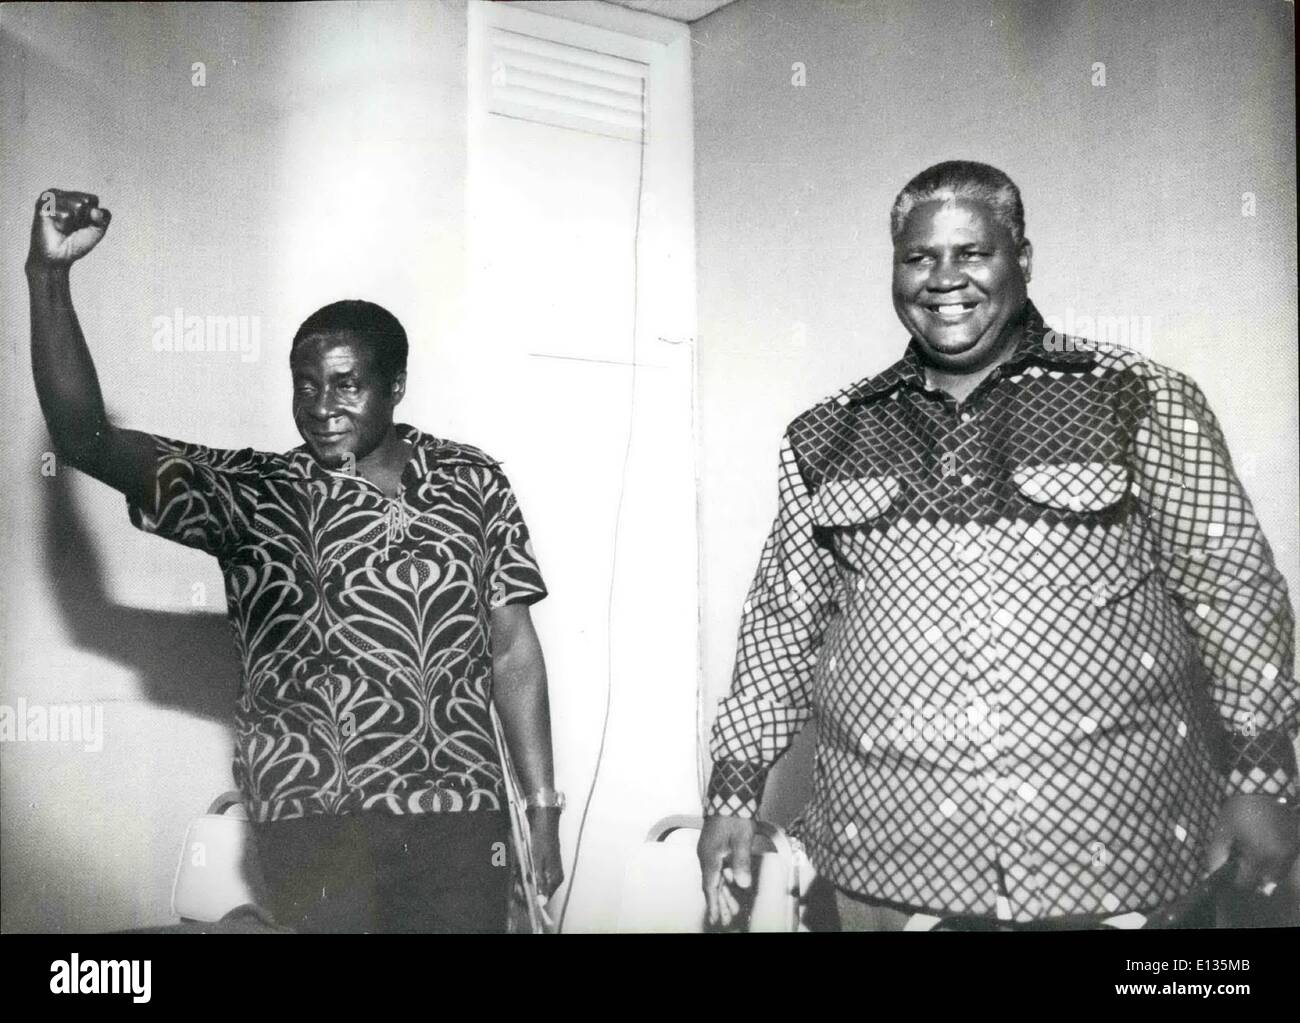 Febbraio 28, 2012 - Rhodesia: due dei più importanti leader nazionalista della Rhodesia nella foto insieme di recente, sulla sinistra è il Sig. Robert Mugabe con Joshua Nkomo, leader della ZAPU. Foto Stock